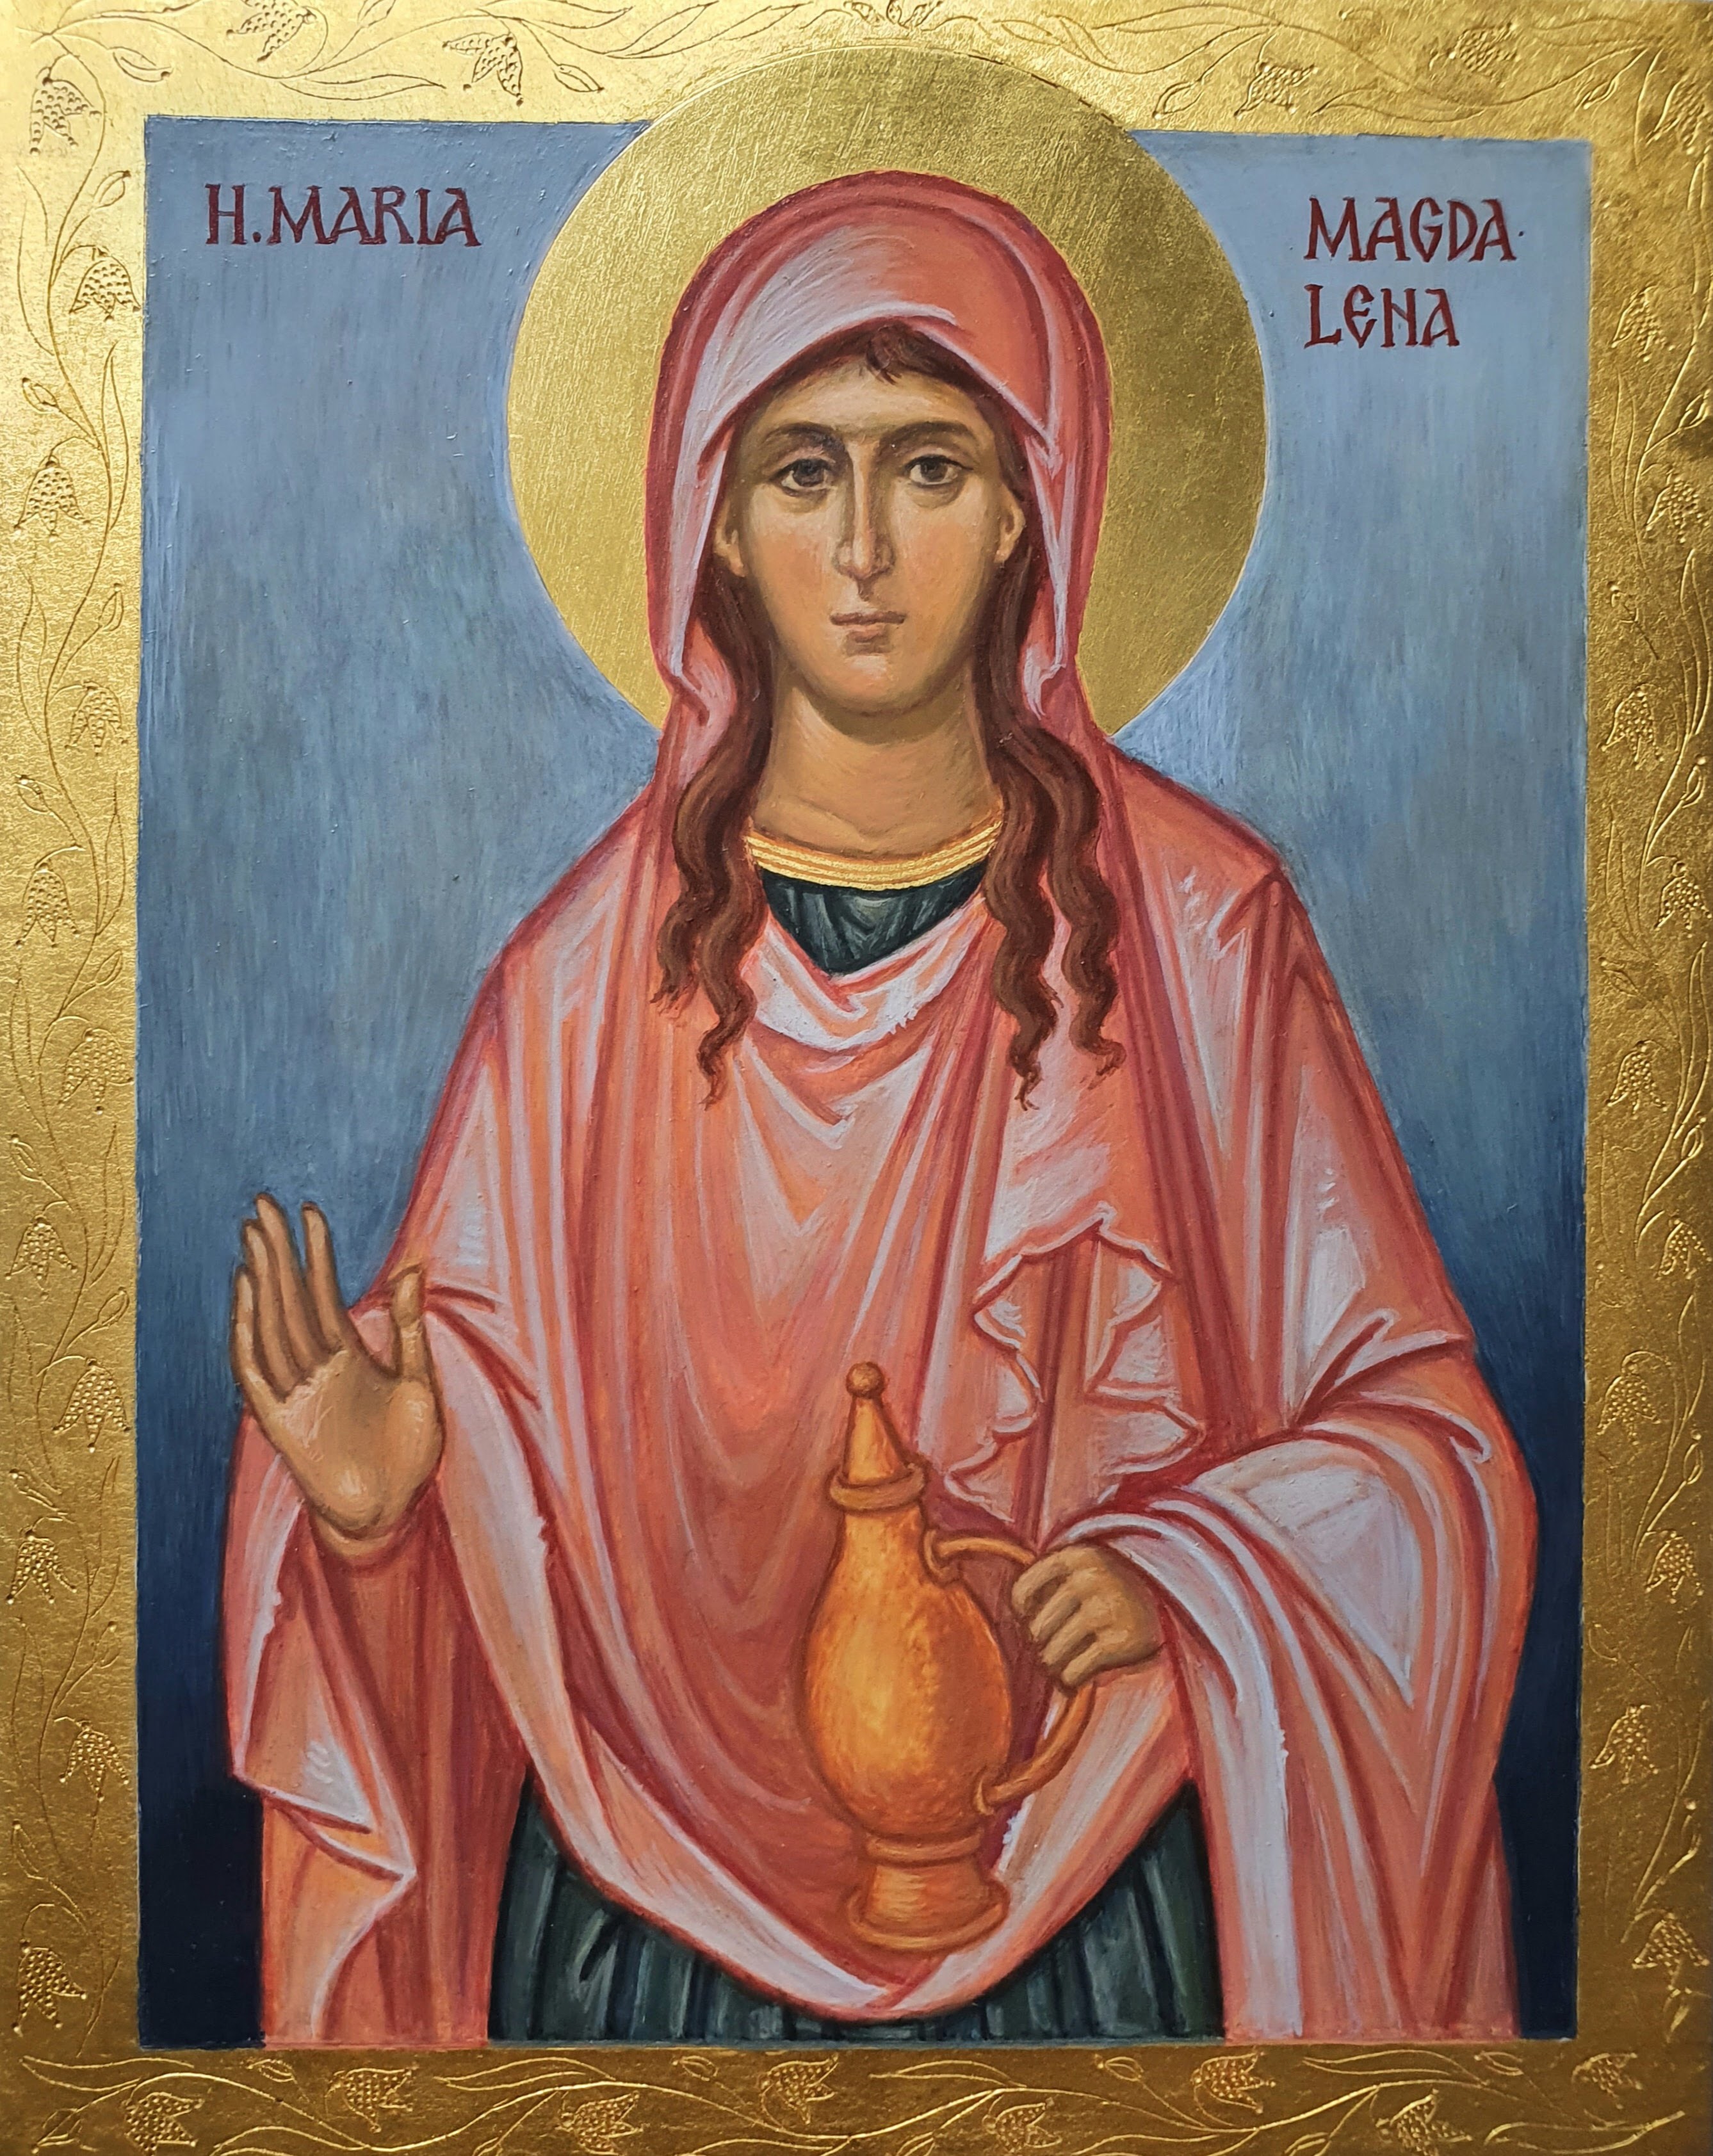 St. Mary of Magdala